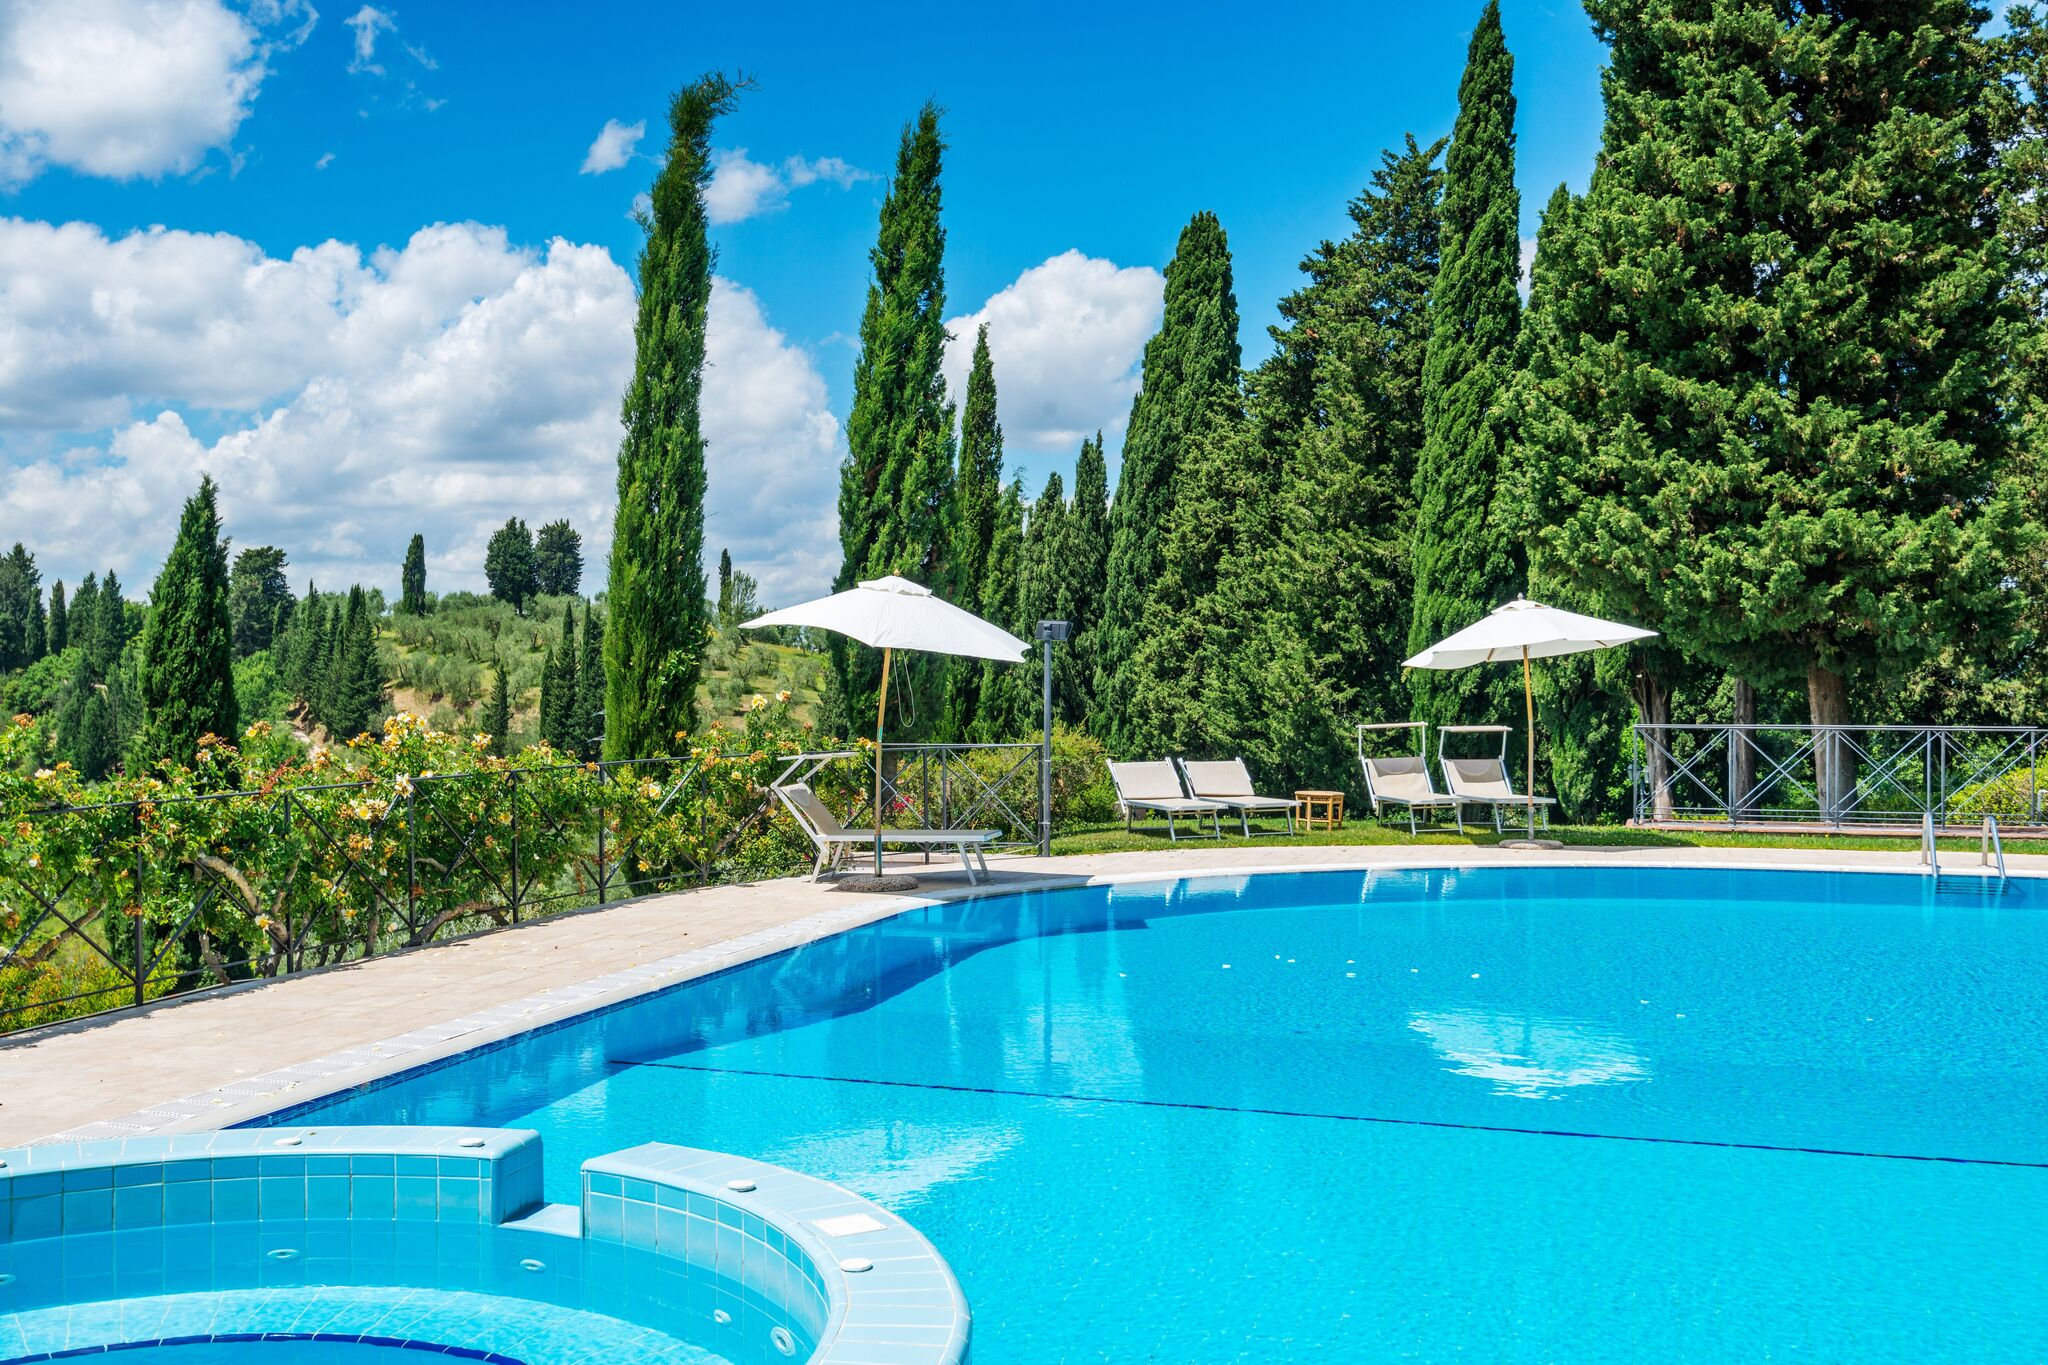 Appartement toscan typique avec piscine et air conditionné